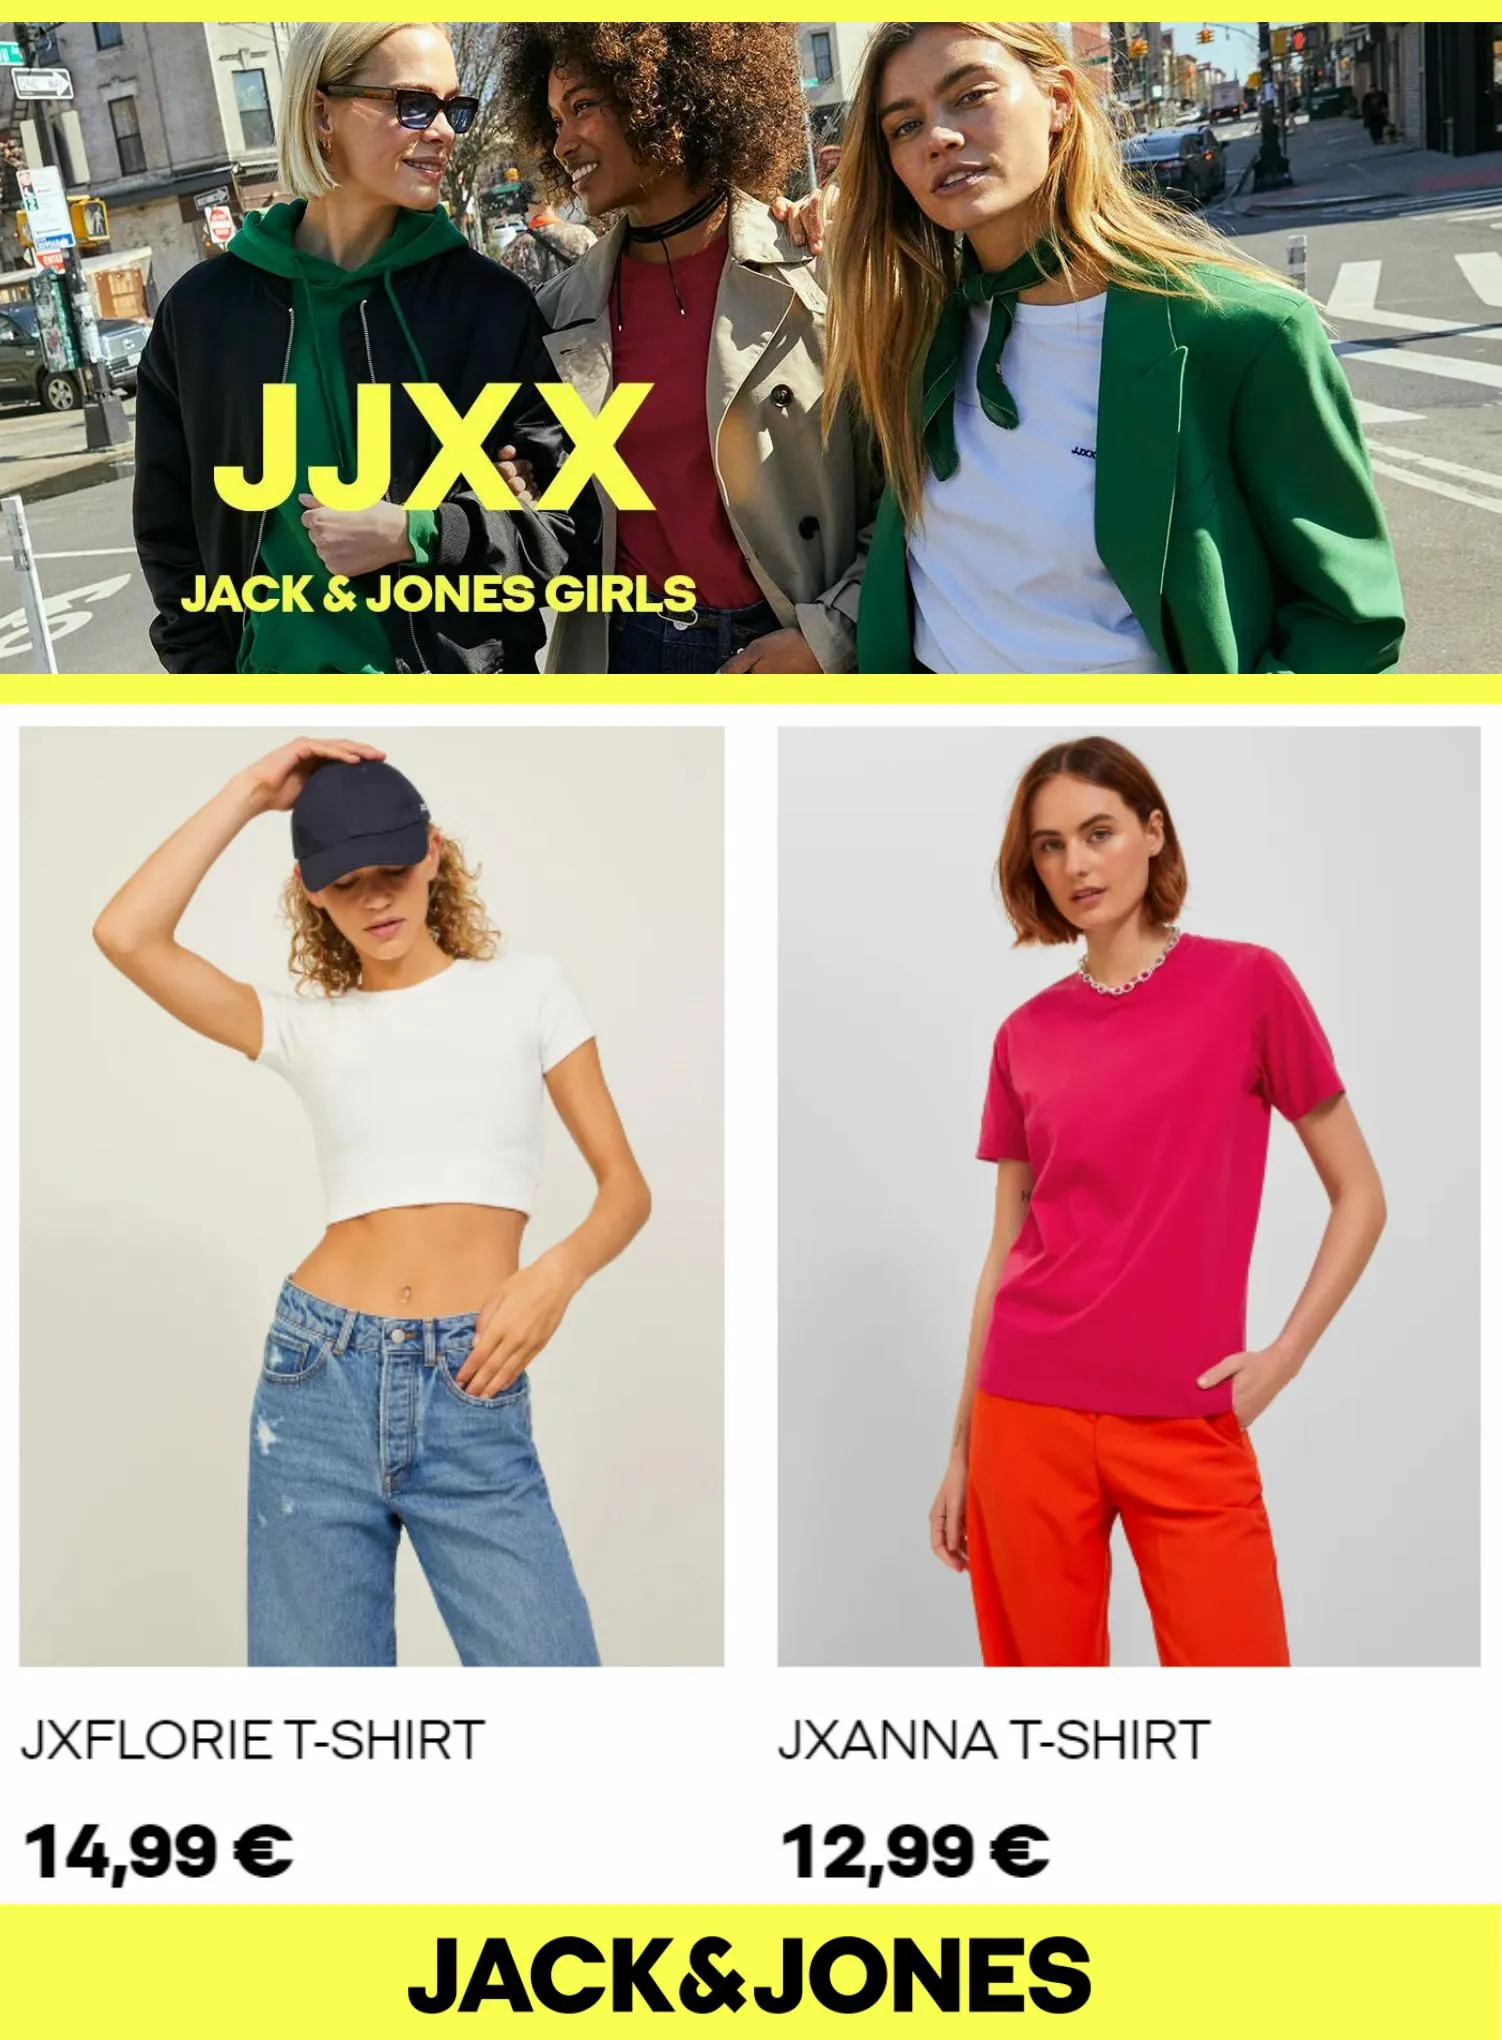 Catalogue JJXX Jack & Jones Girls, page 00002